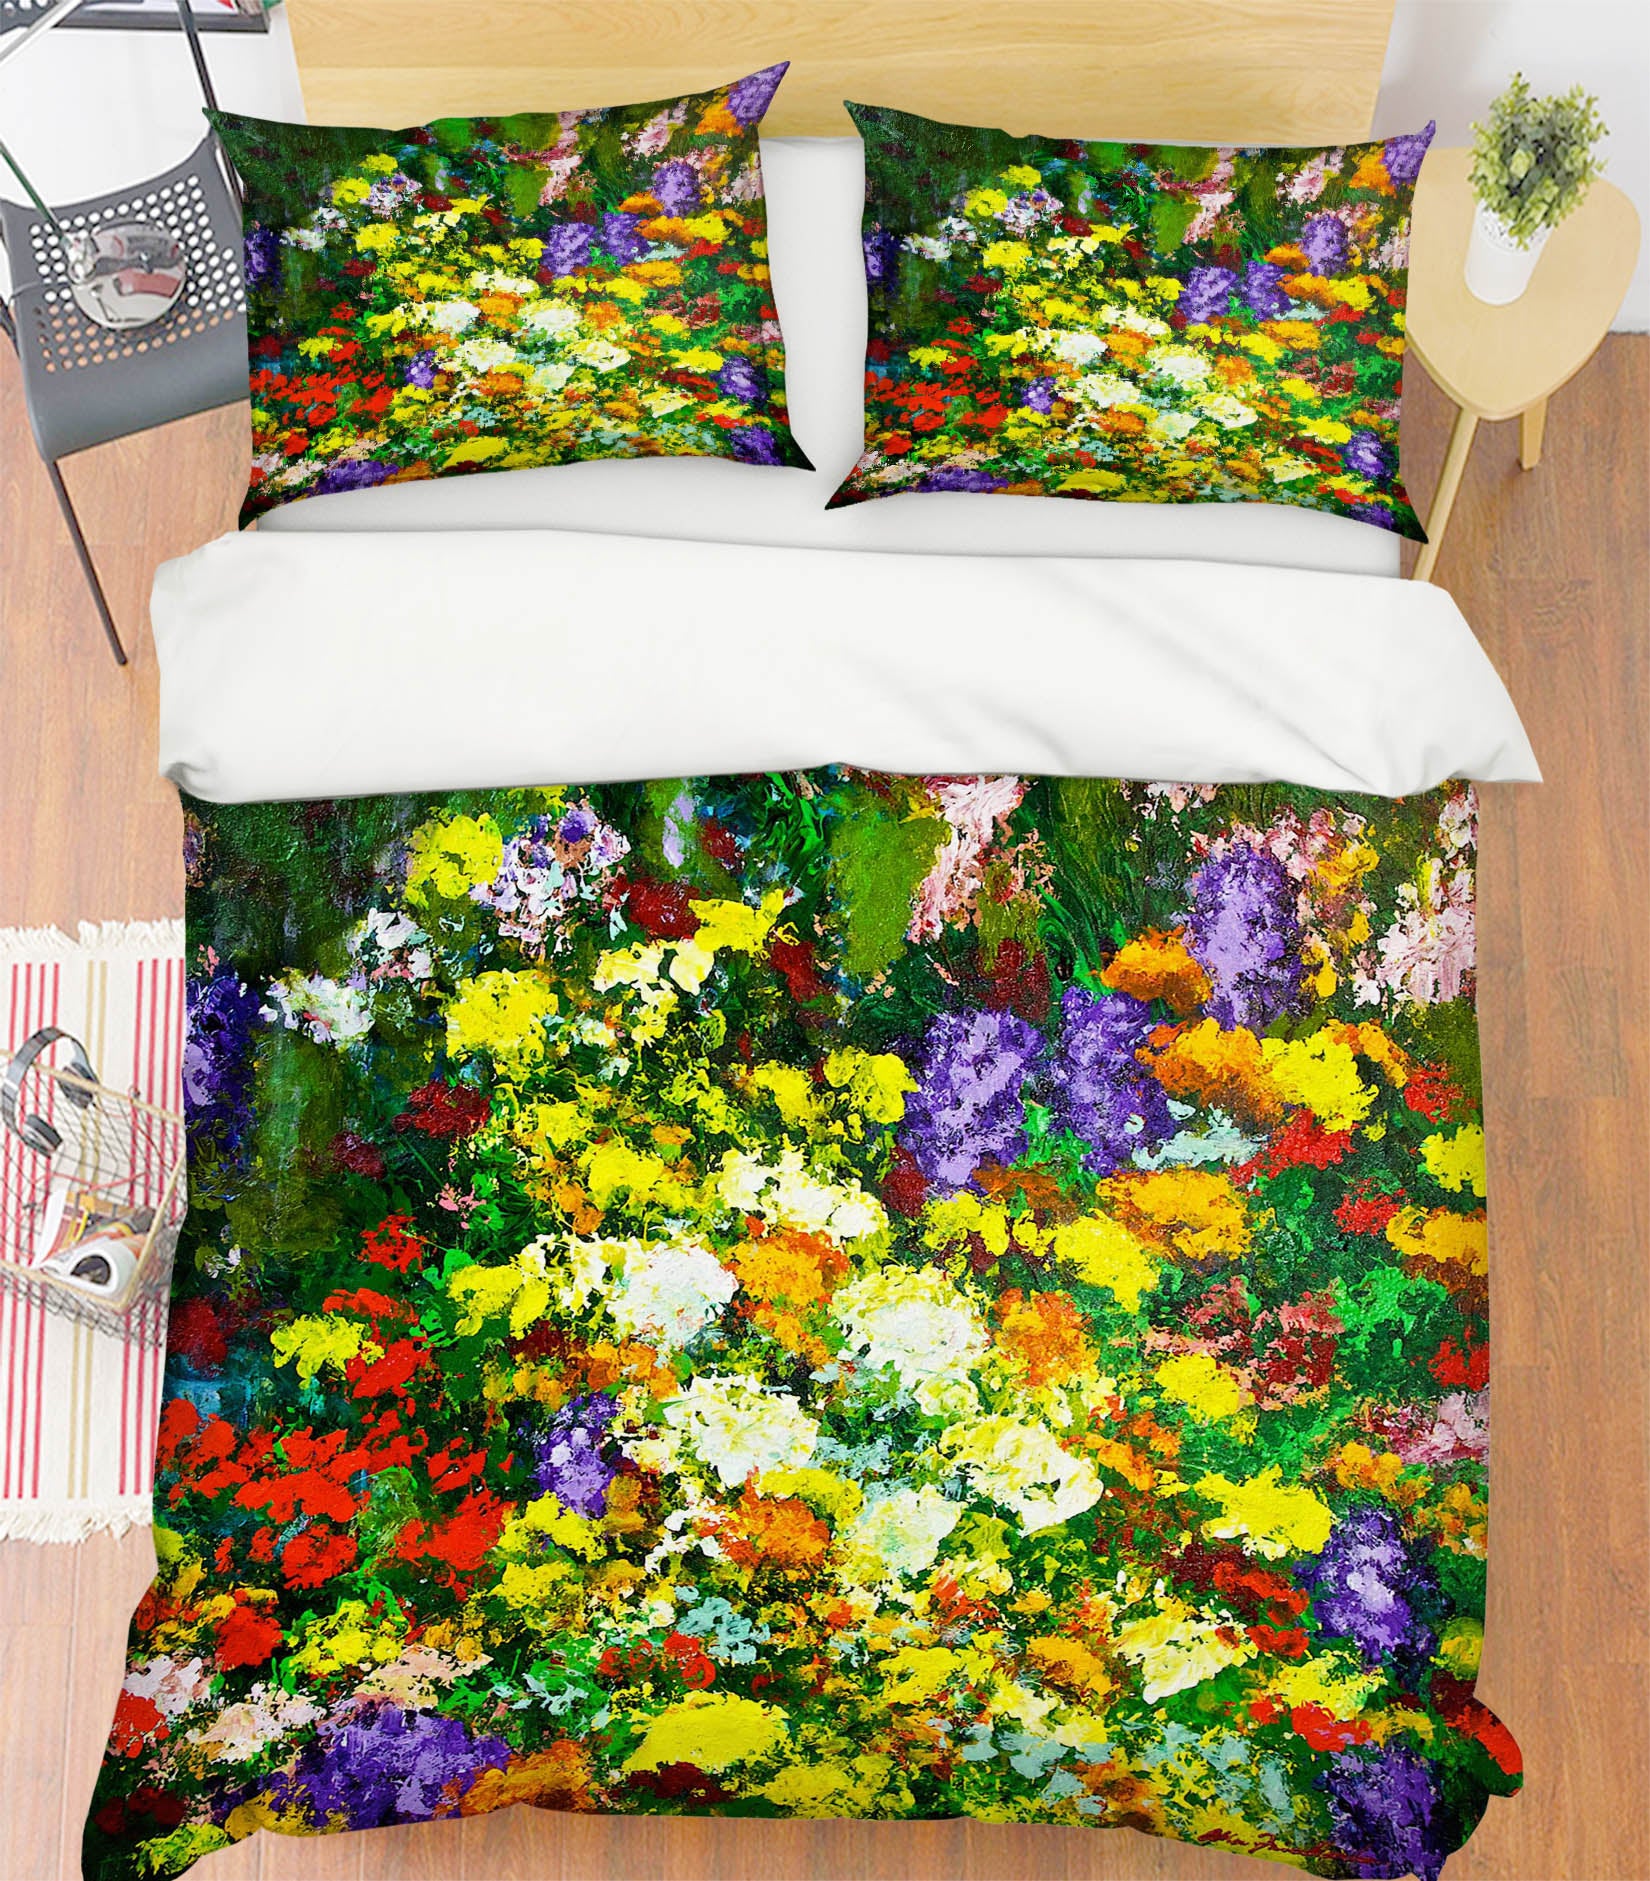 3D Canyon Flower 1077 Allan P. Friedlander Bedding Bed Pillowcases Quilt